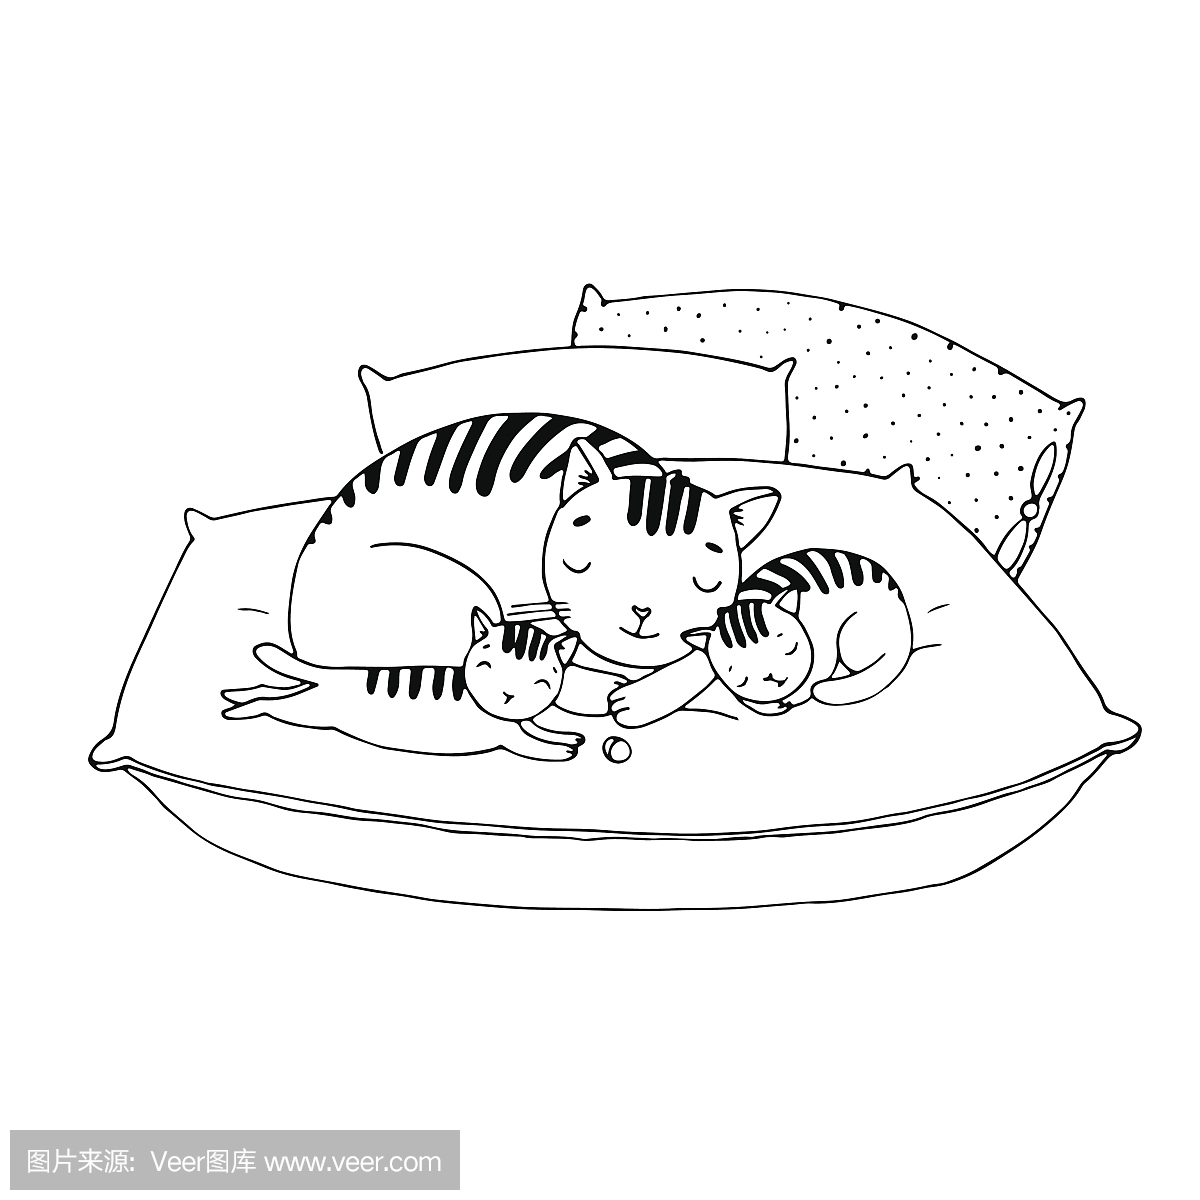 可爱的卡通猫在靠垫上。